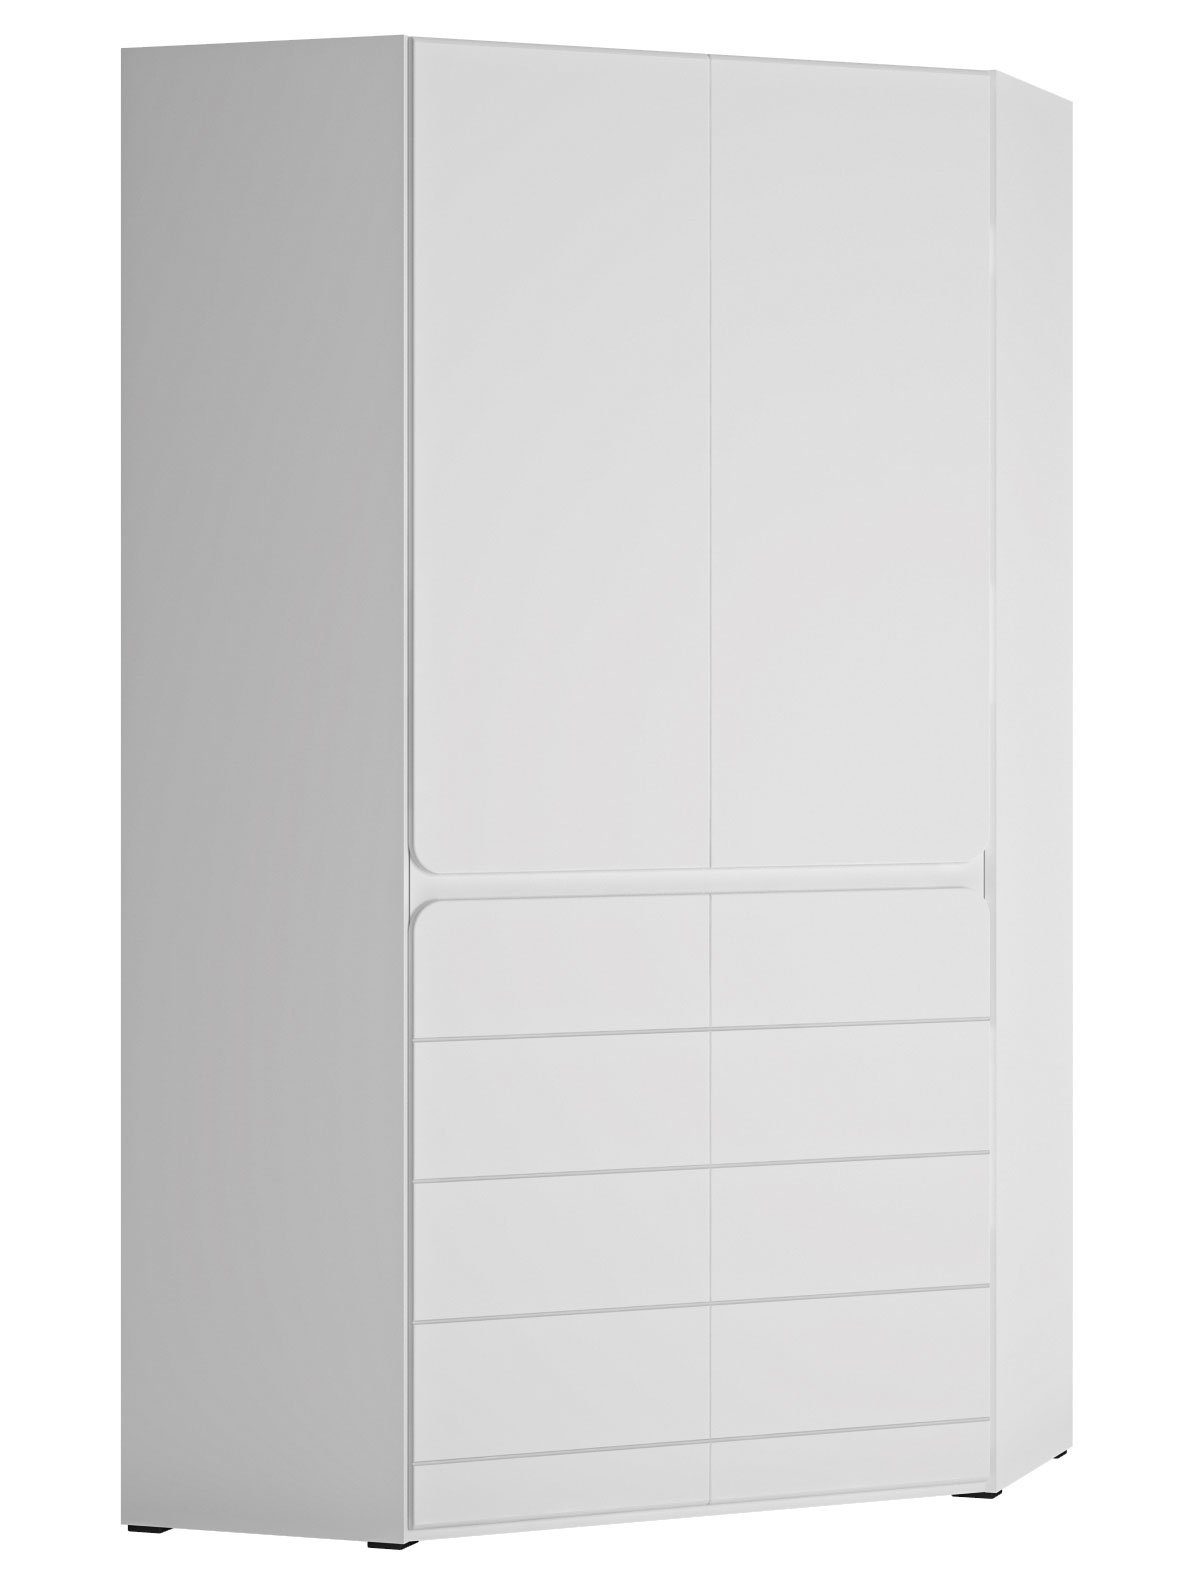 Feldmann-Wohnen Eckschrank Albi (Albi, Eckschrank) 101x101x193cm weiß | Eckkleiderschränke